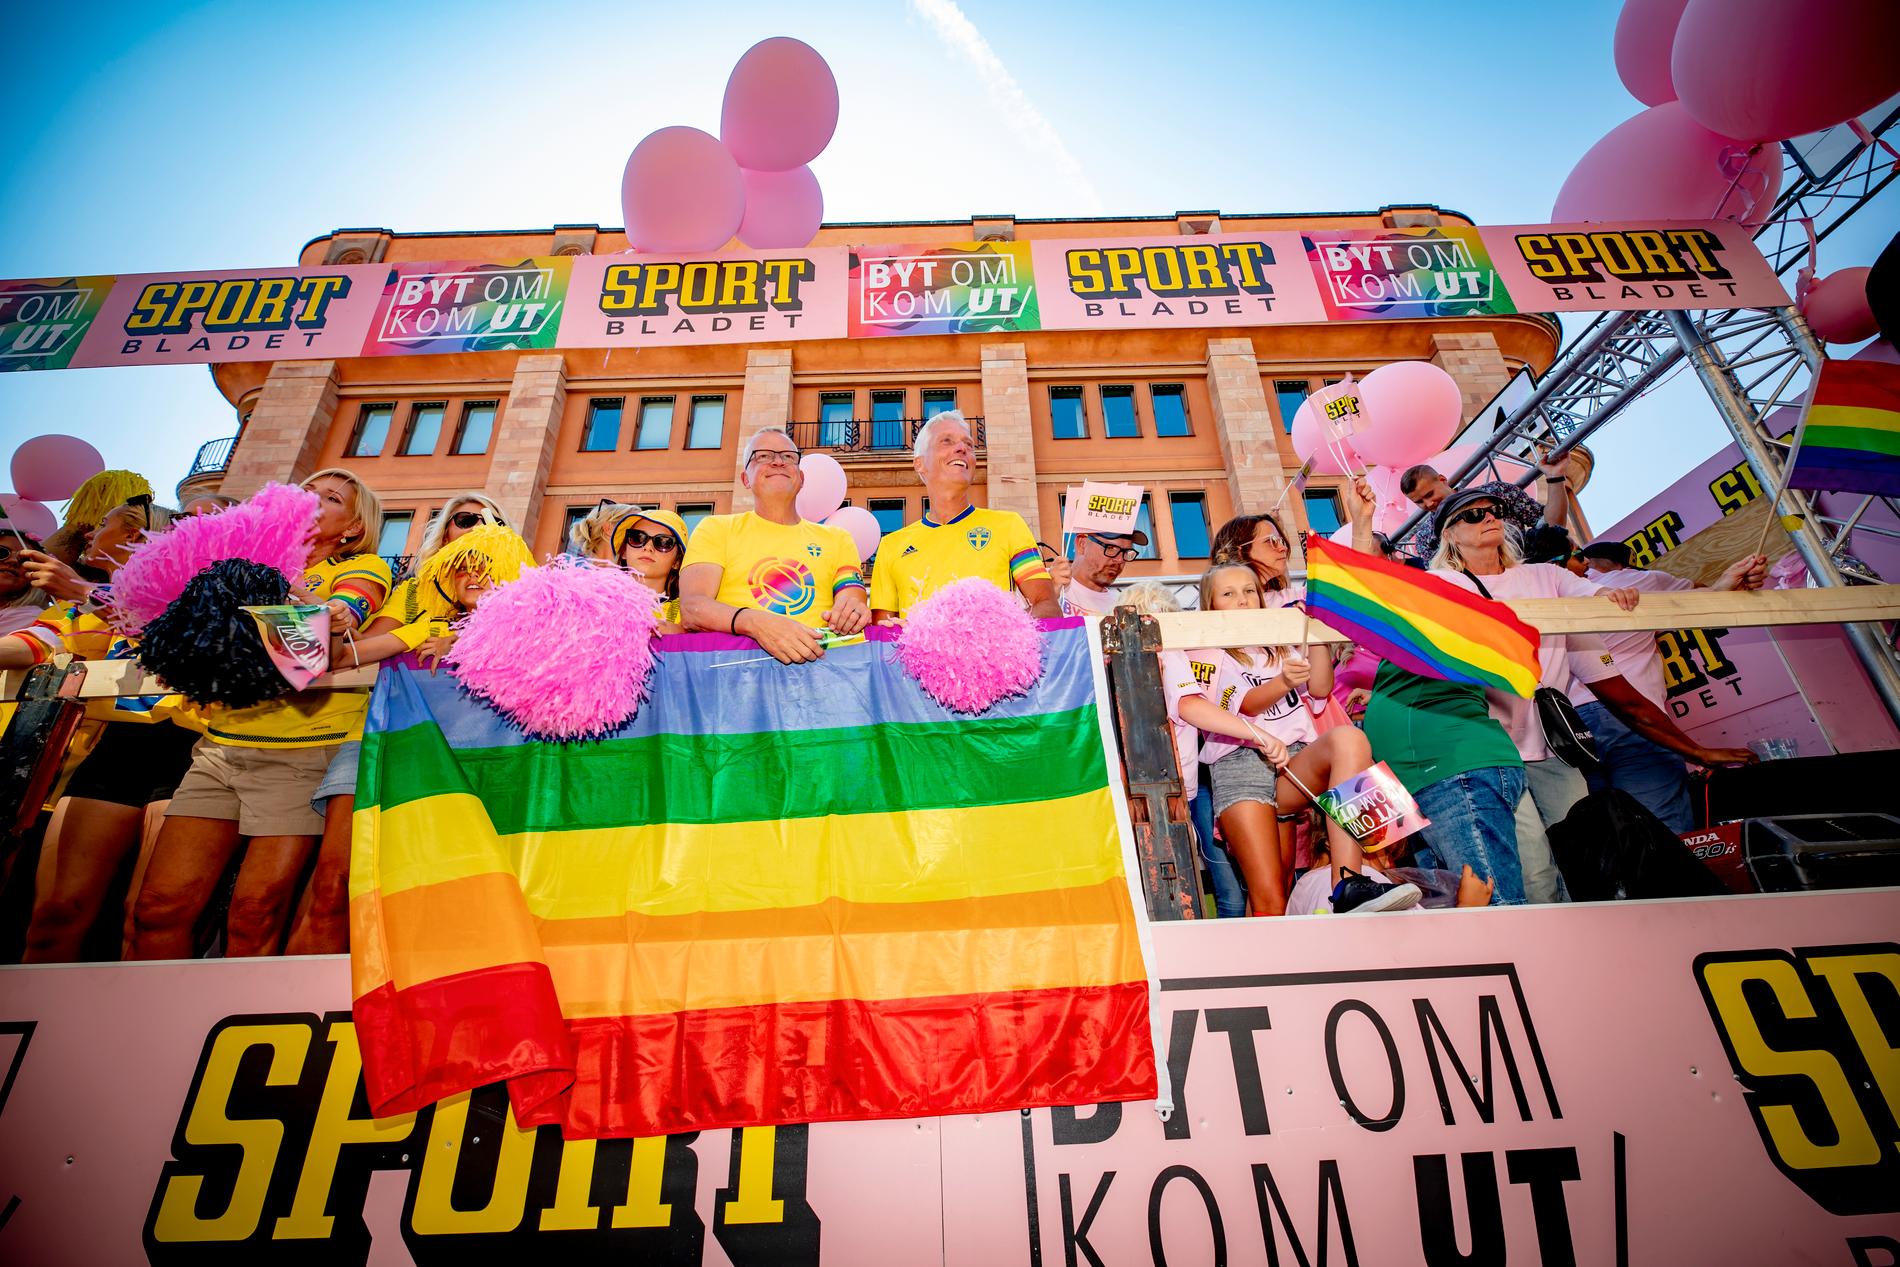 Sportbladets flak under Stockholm Pride.